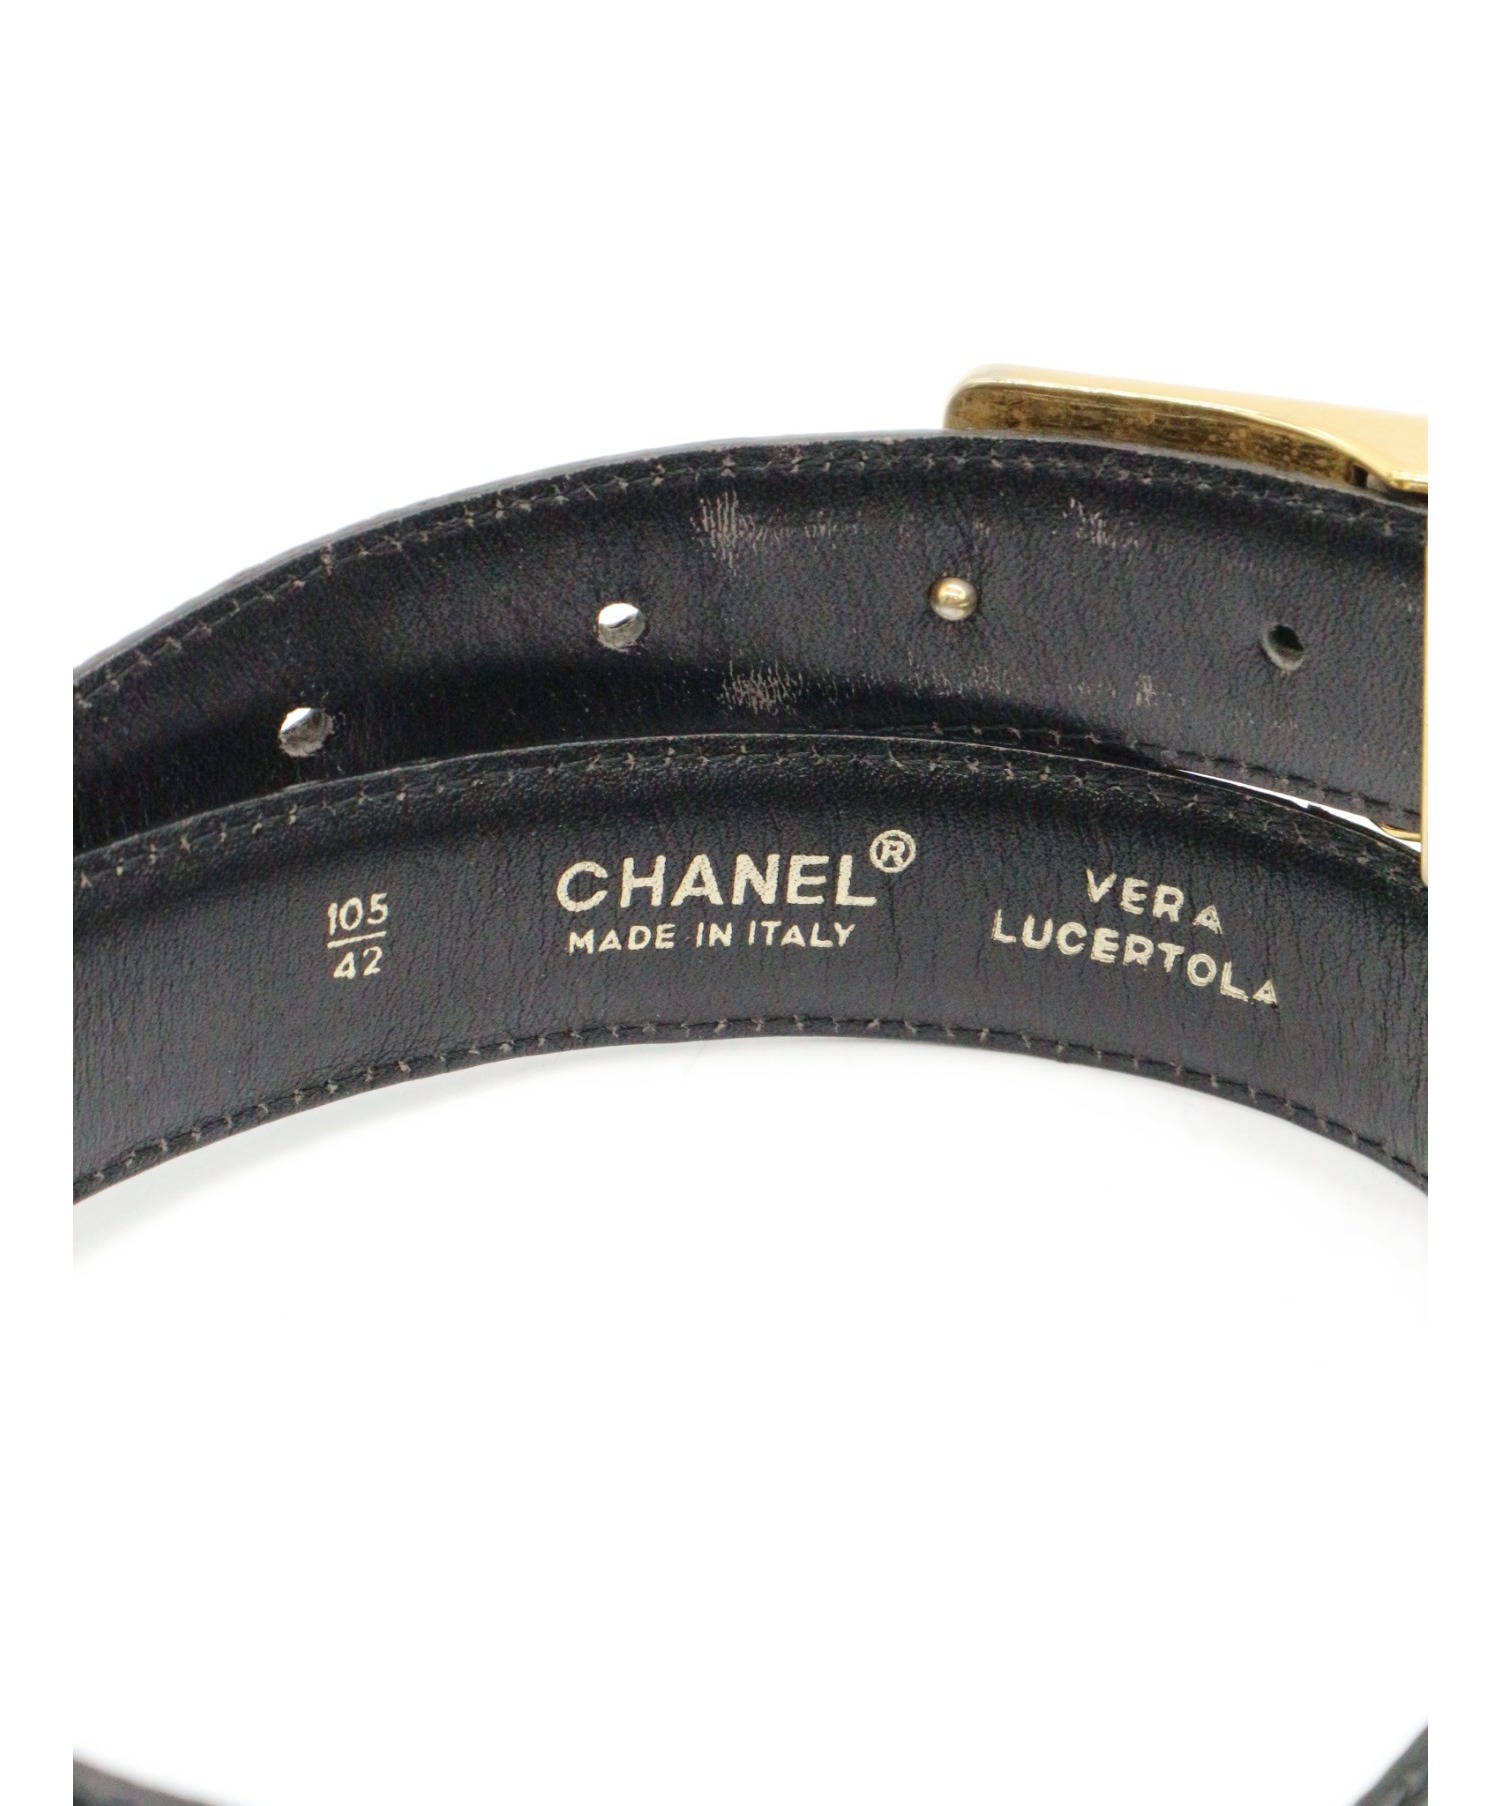 CHANEL (シャネル) ヴィンテージココマークレザーベルト ブラック サイズ:105/42 リアルリザード